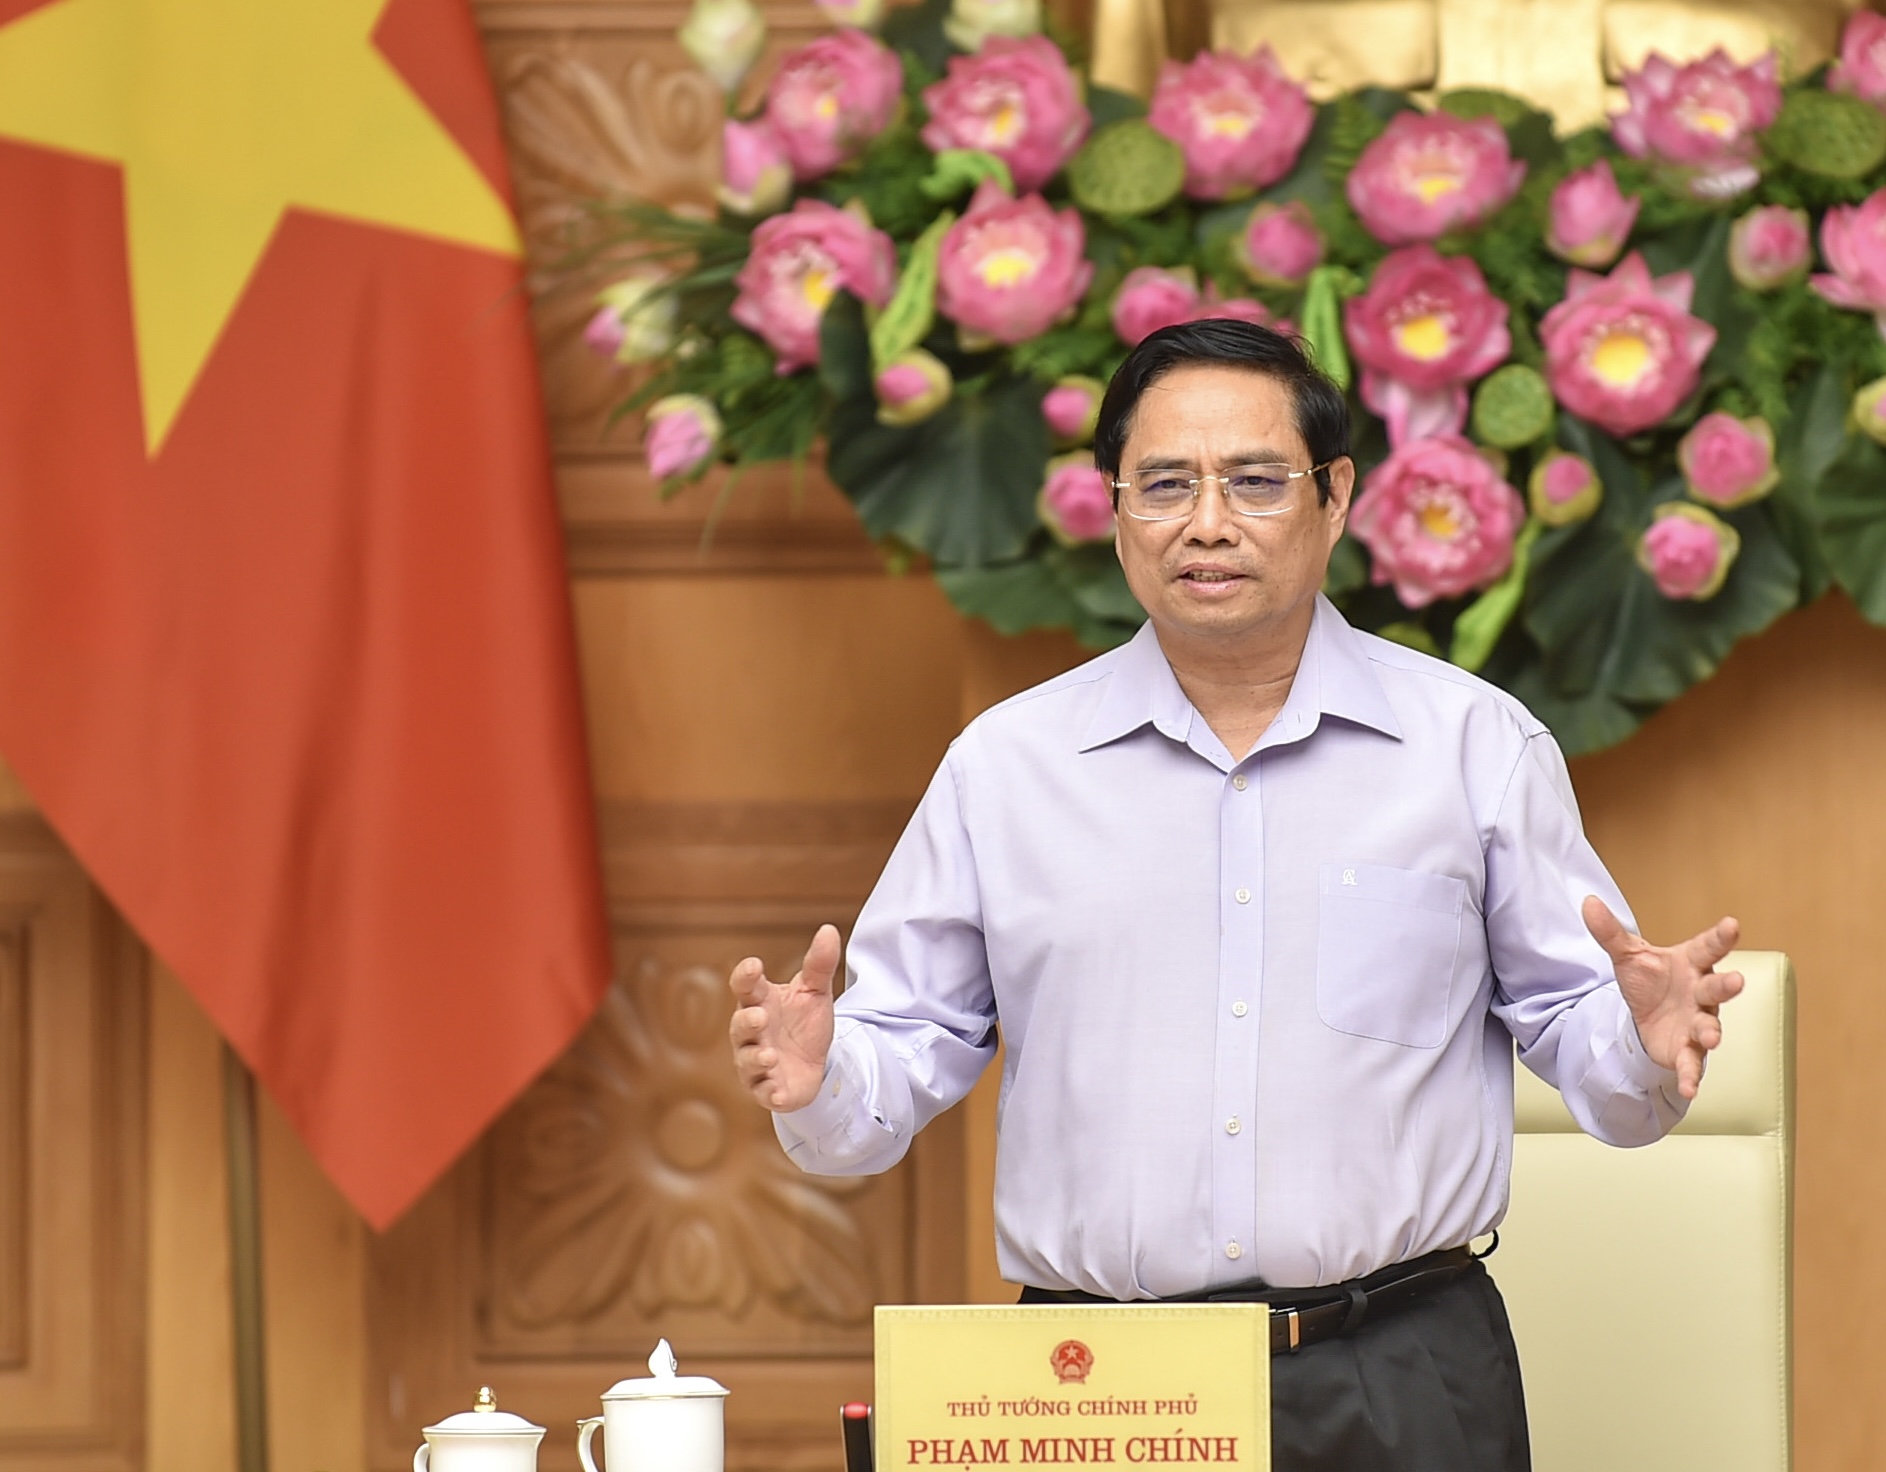 Thủ tướng nêu rõ, Chính phủ Việt Nam luôn sẵn sàng tạo điều kiện và đồng hành để các doanh nghiệp nước ngoài, trong đó có doanh nghiệp Hàn Quốc đầu tư, kinh doanh thuận lợi. Ảnh VGP/Nhật Bắc              